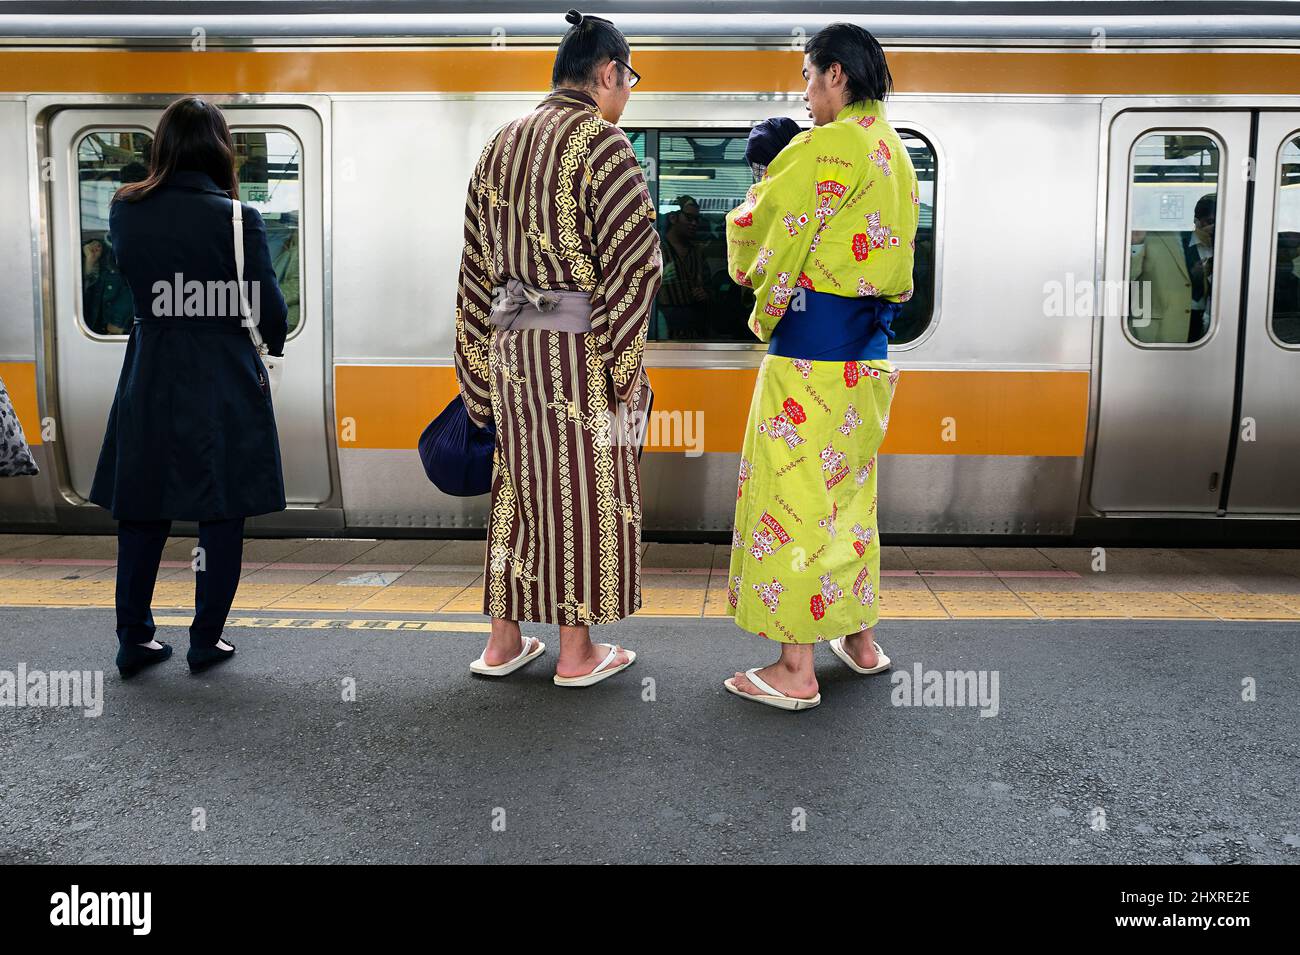 Japon, île de Honshu, Kanto, Tokyo, sumo apprentis attendant sur une plate-forme de train. Banque D'Images